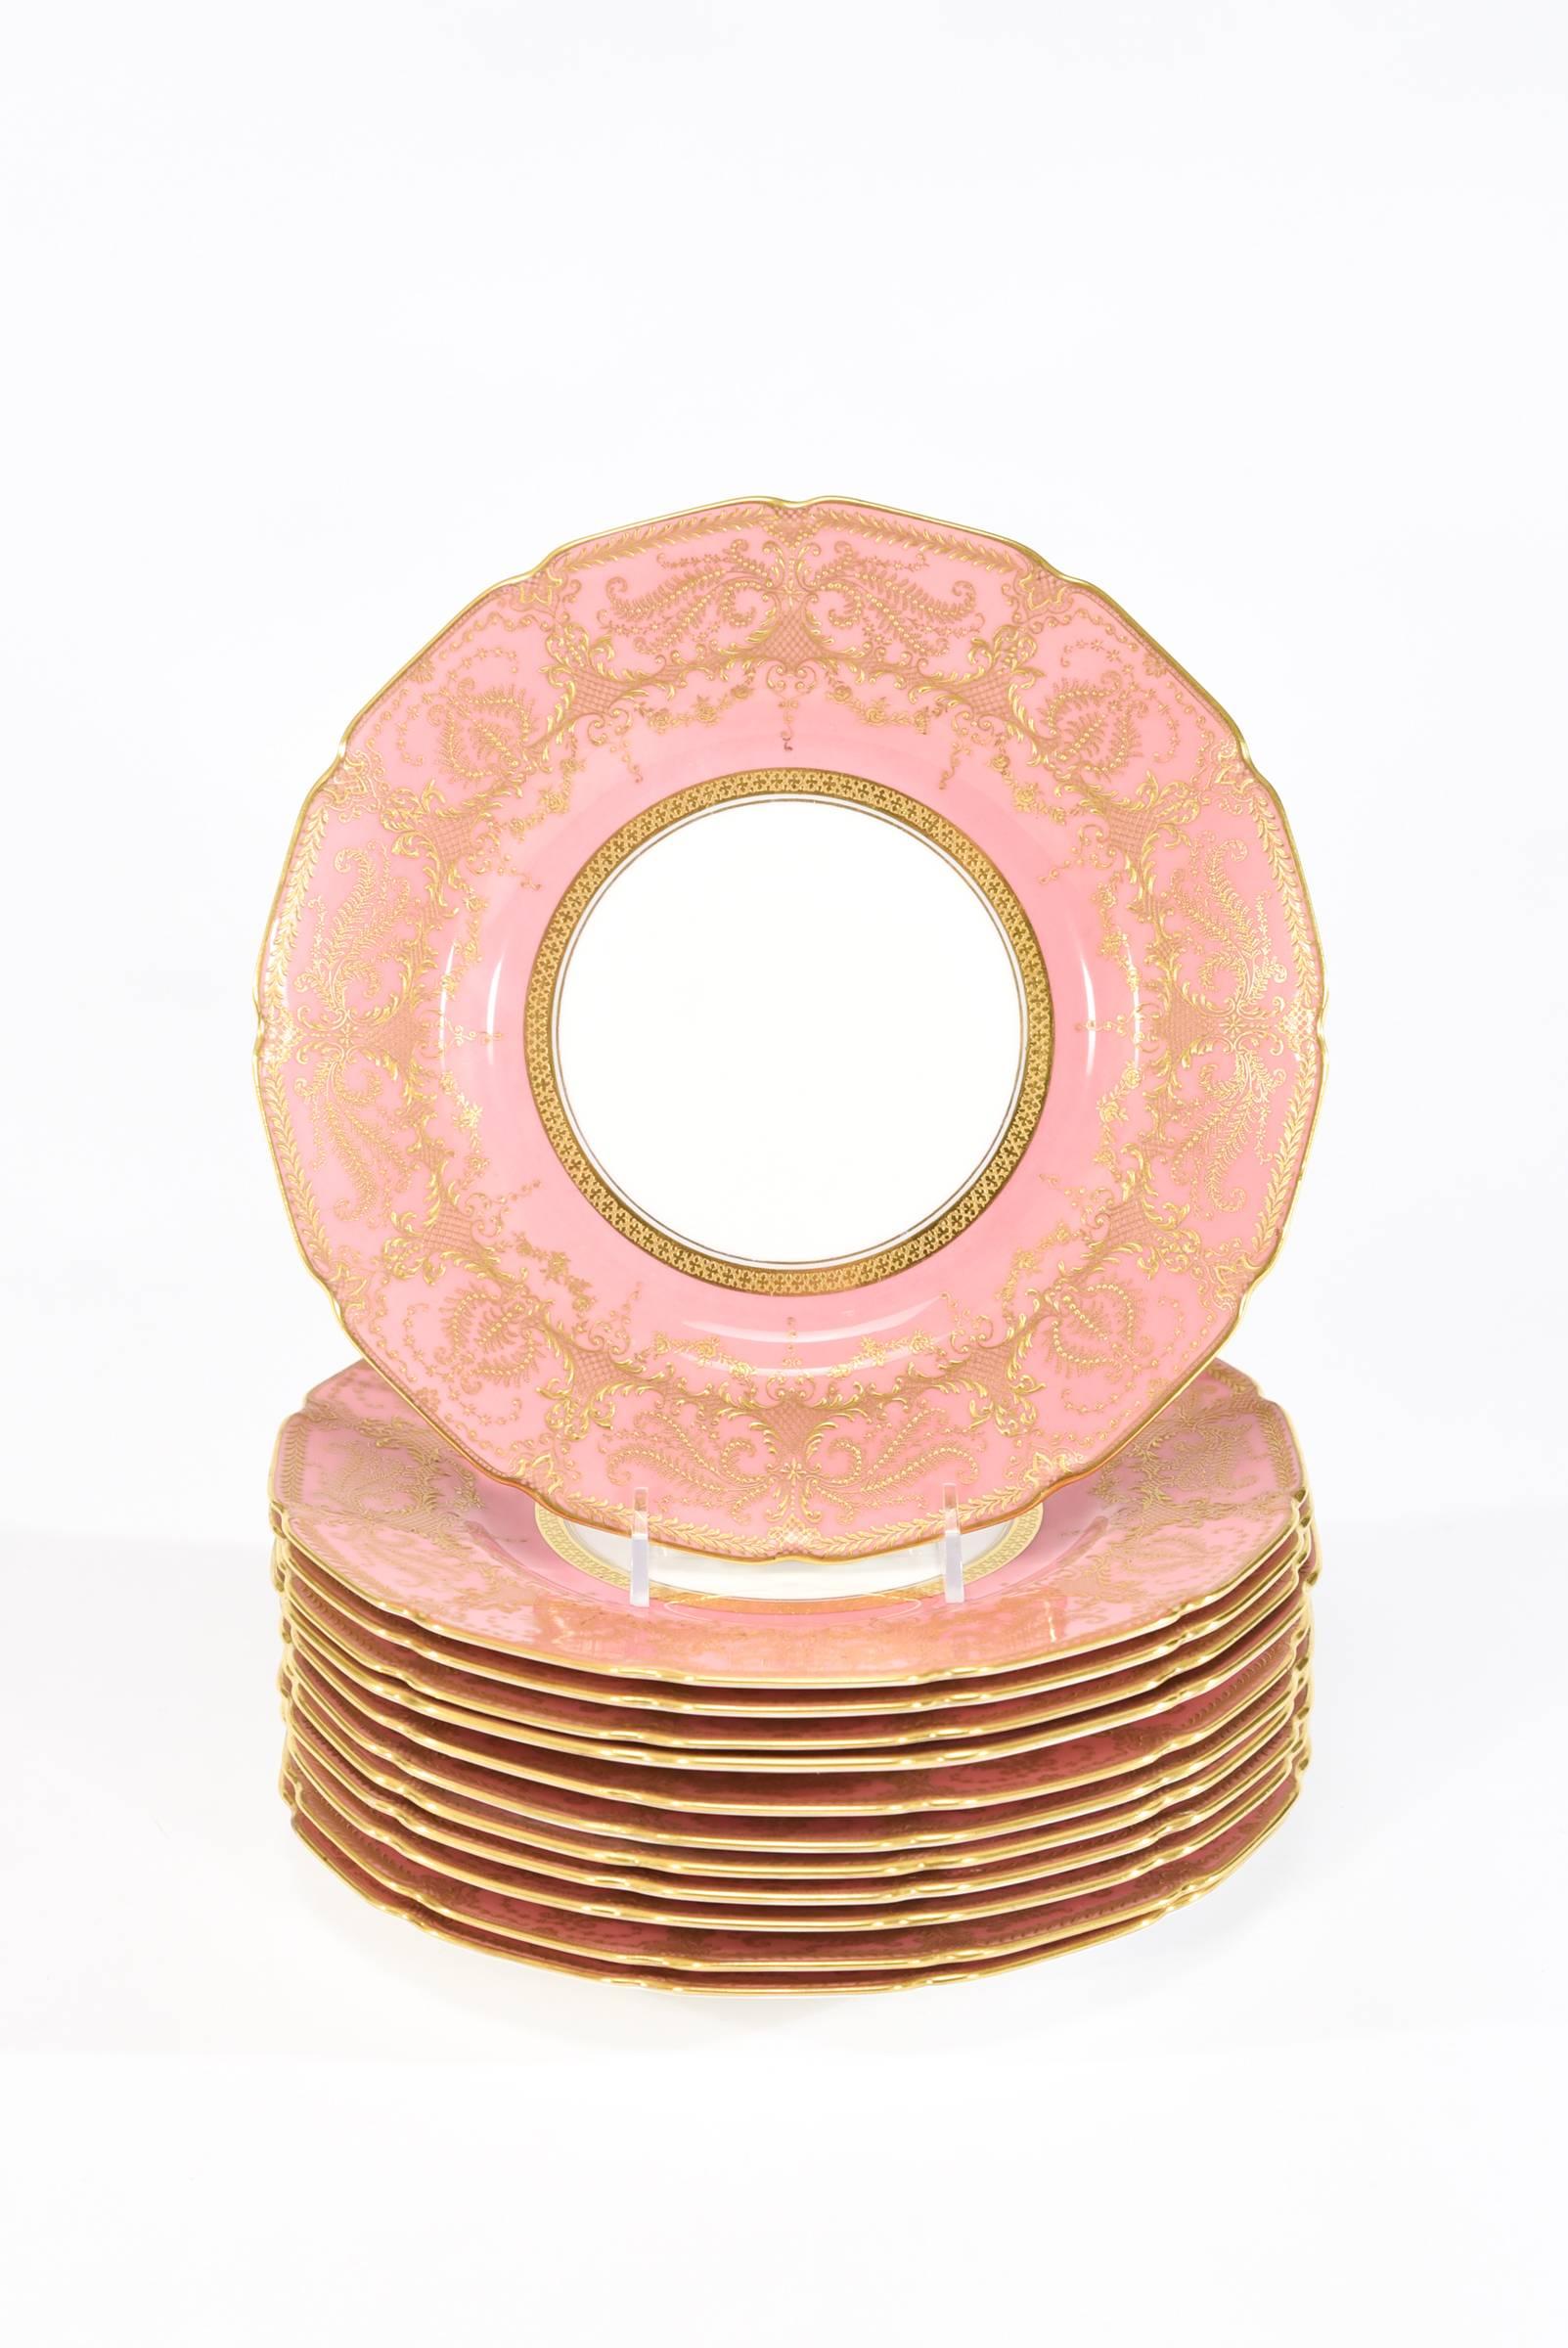 royal doulton plates